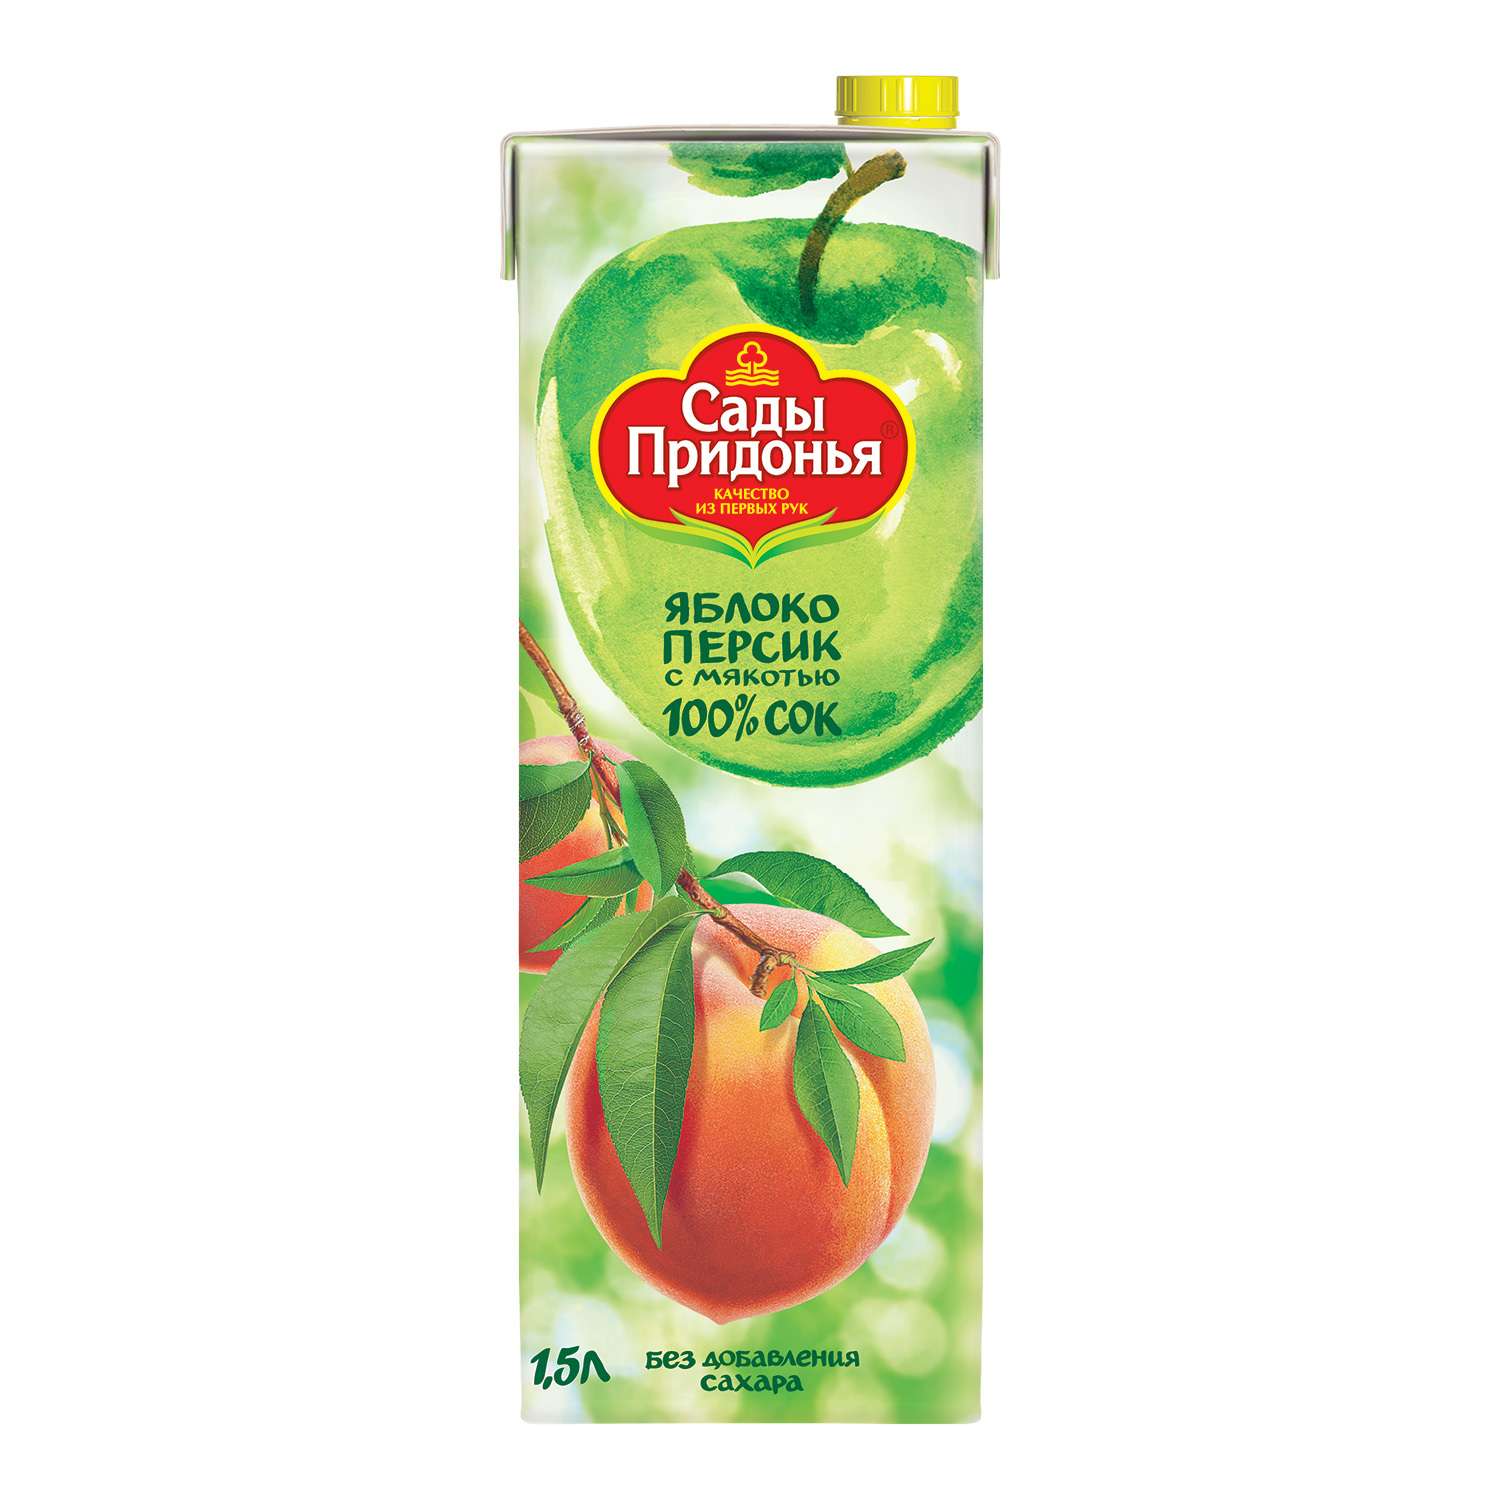 Сок Сады Придонья яблоко-персик с мякотью восстановленный 1.5л - фото 1